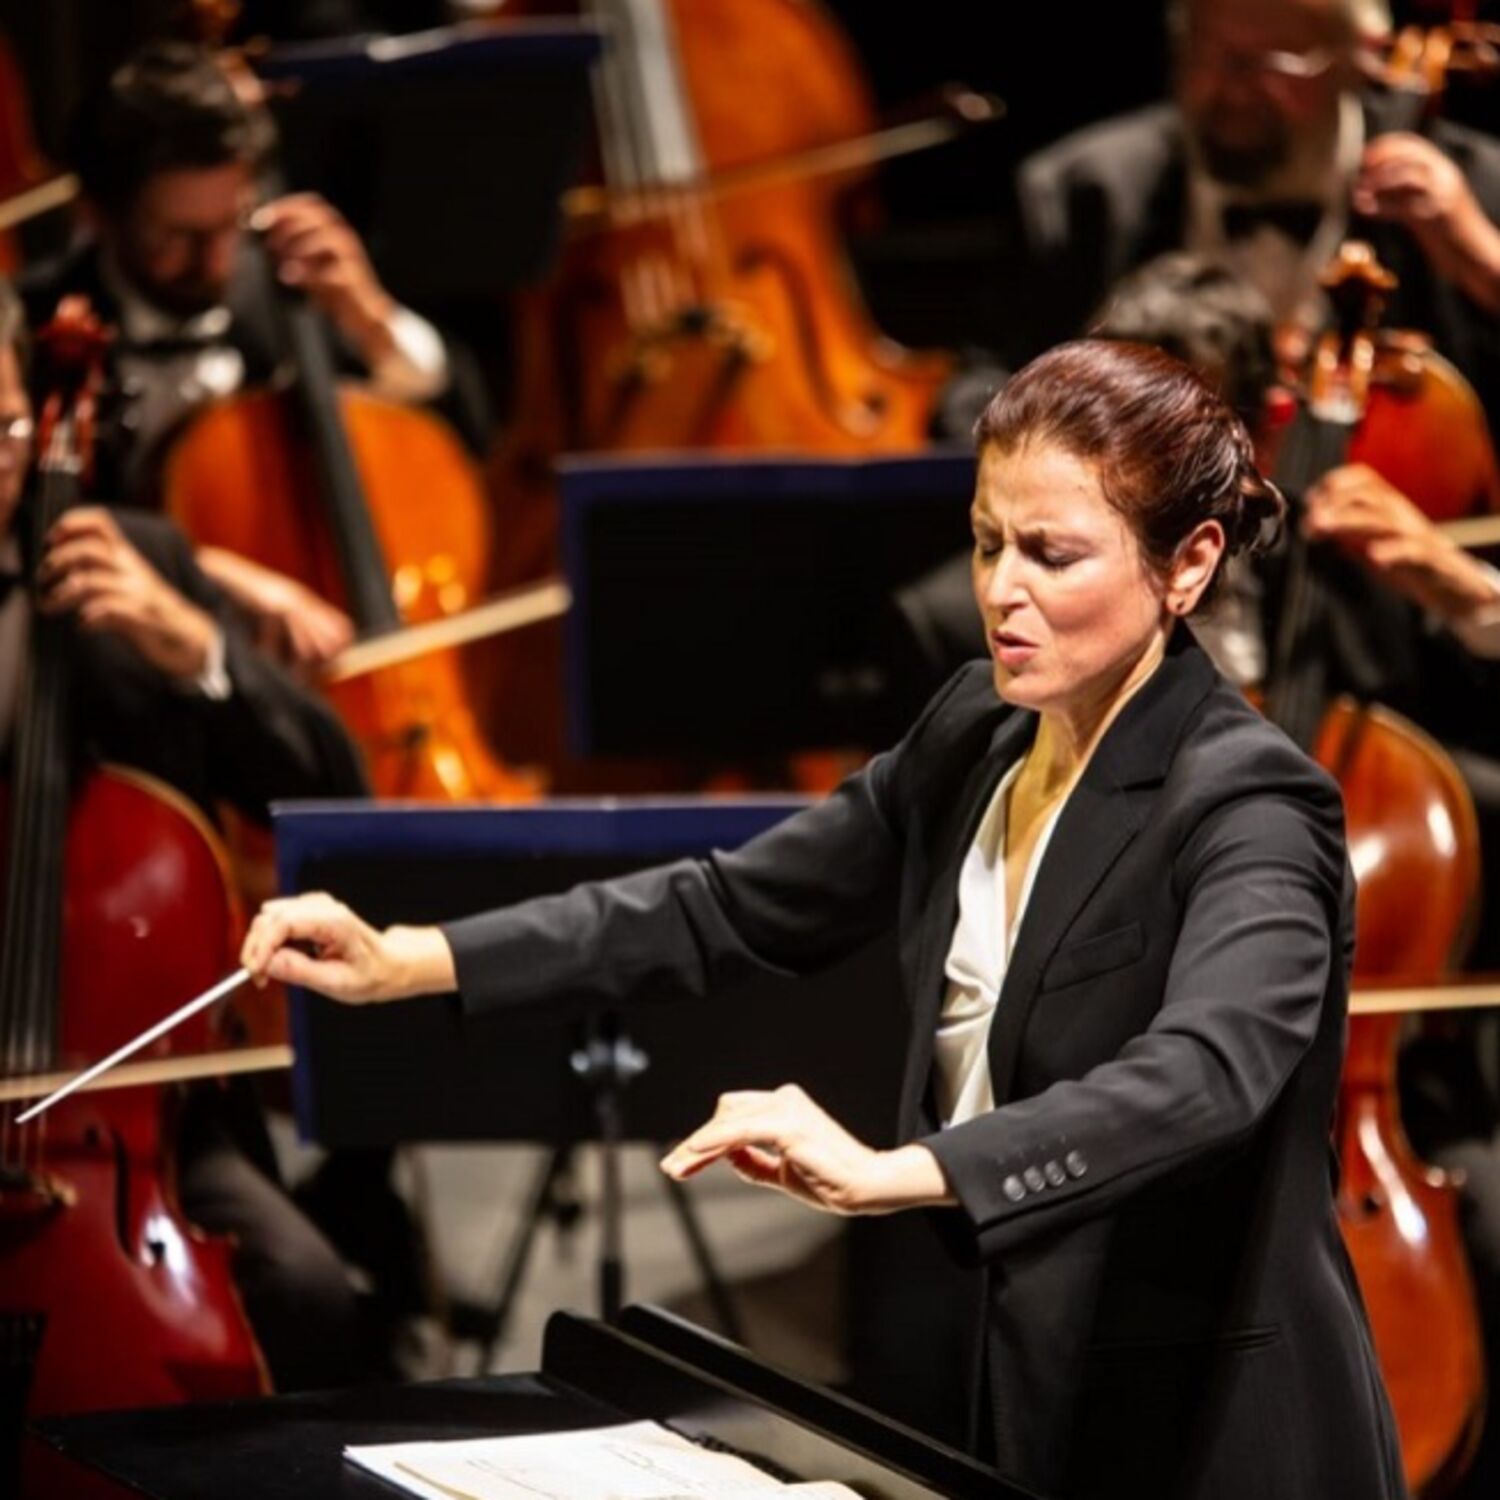 La cheffe d’orchestre Debora Waldman nous parle de l’opéra Stiffelio